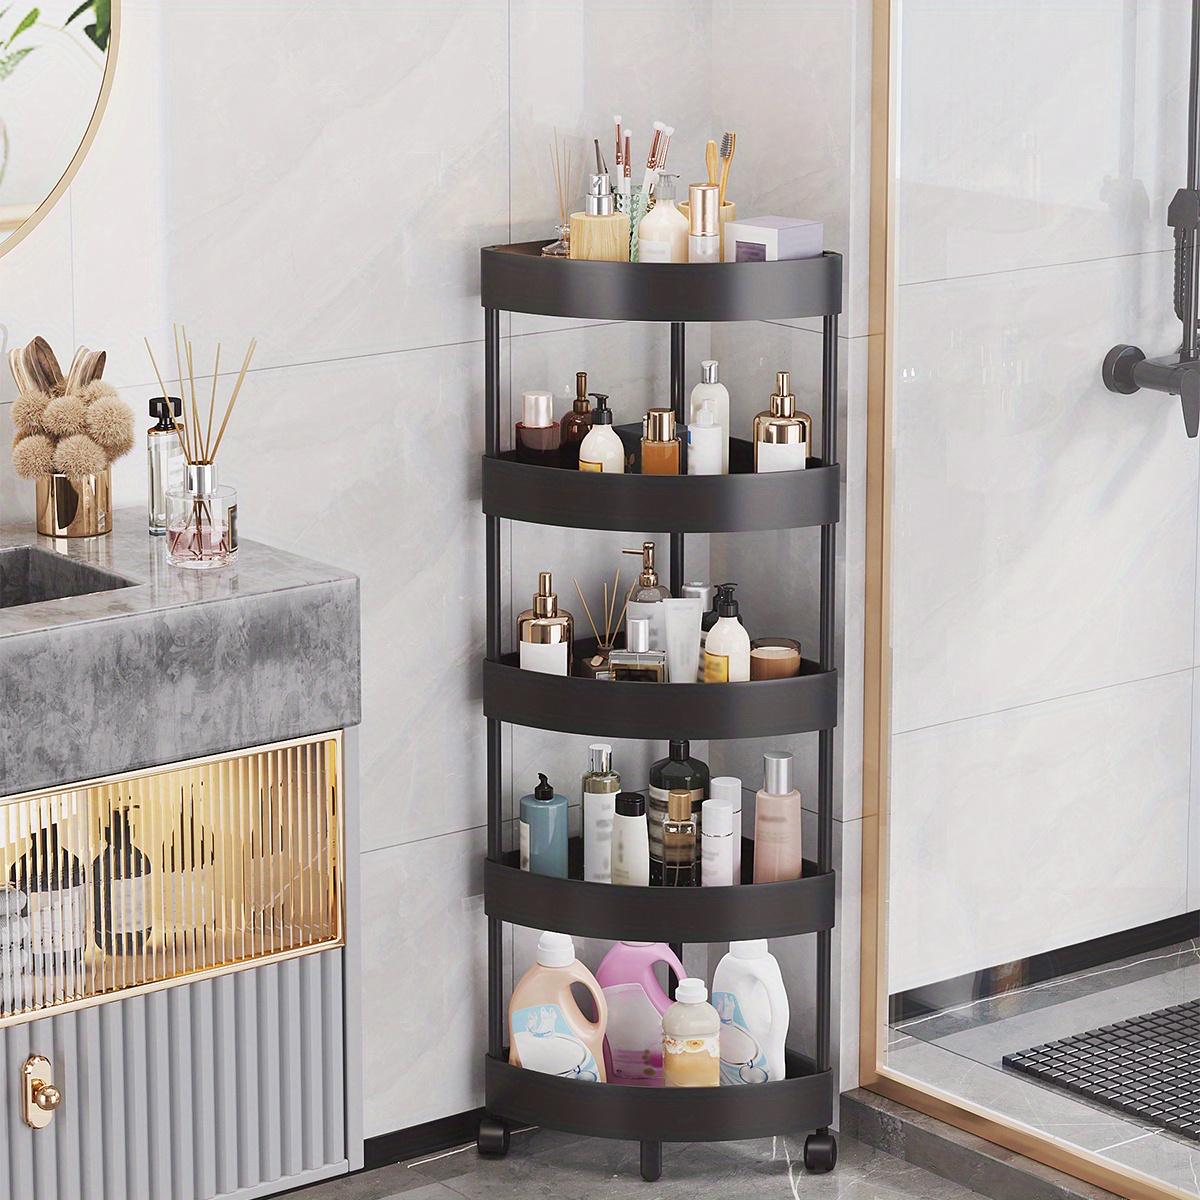 Bathroom Shower Corner Shelf Shelves Storage – Home Goods Mall